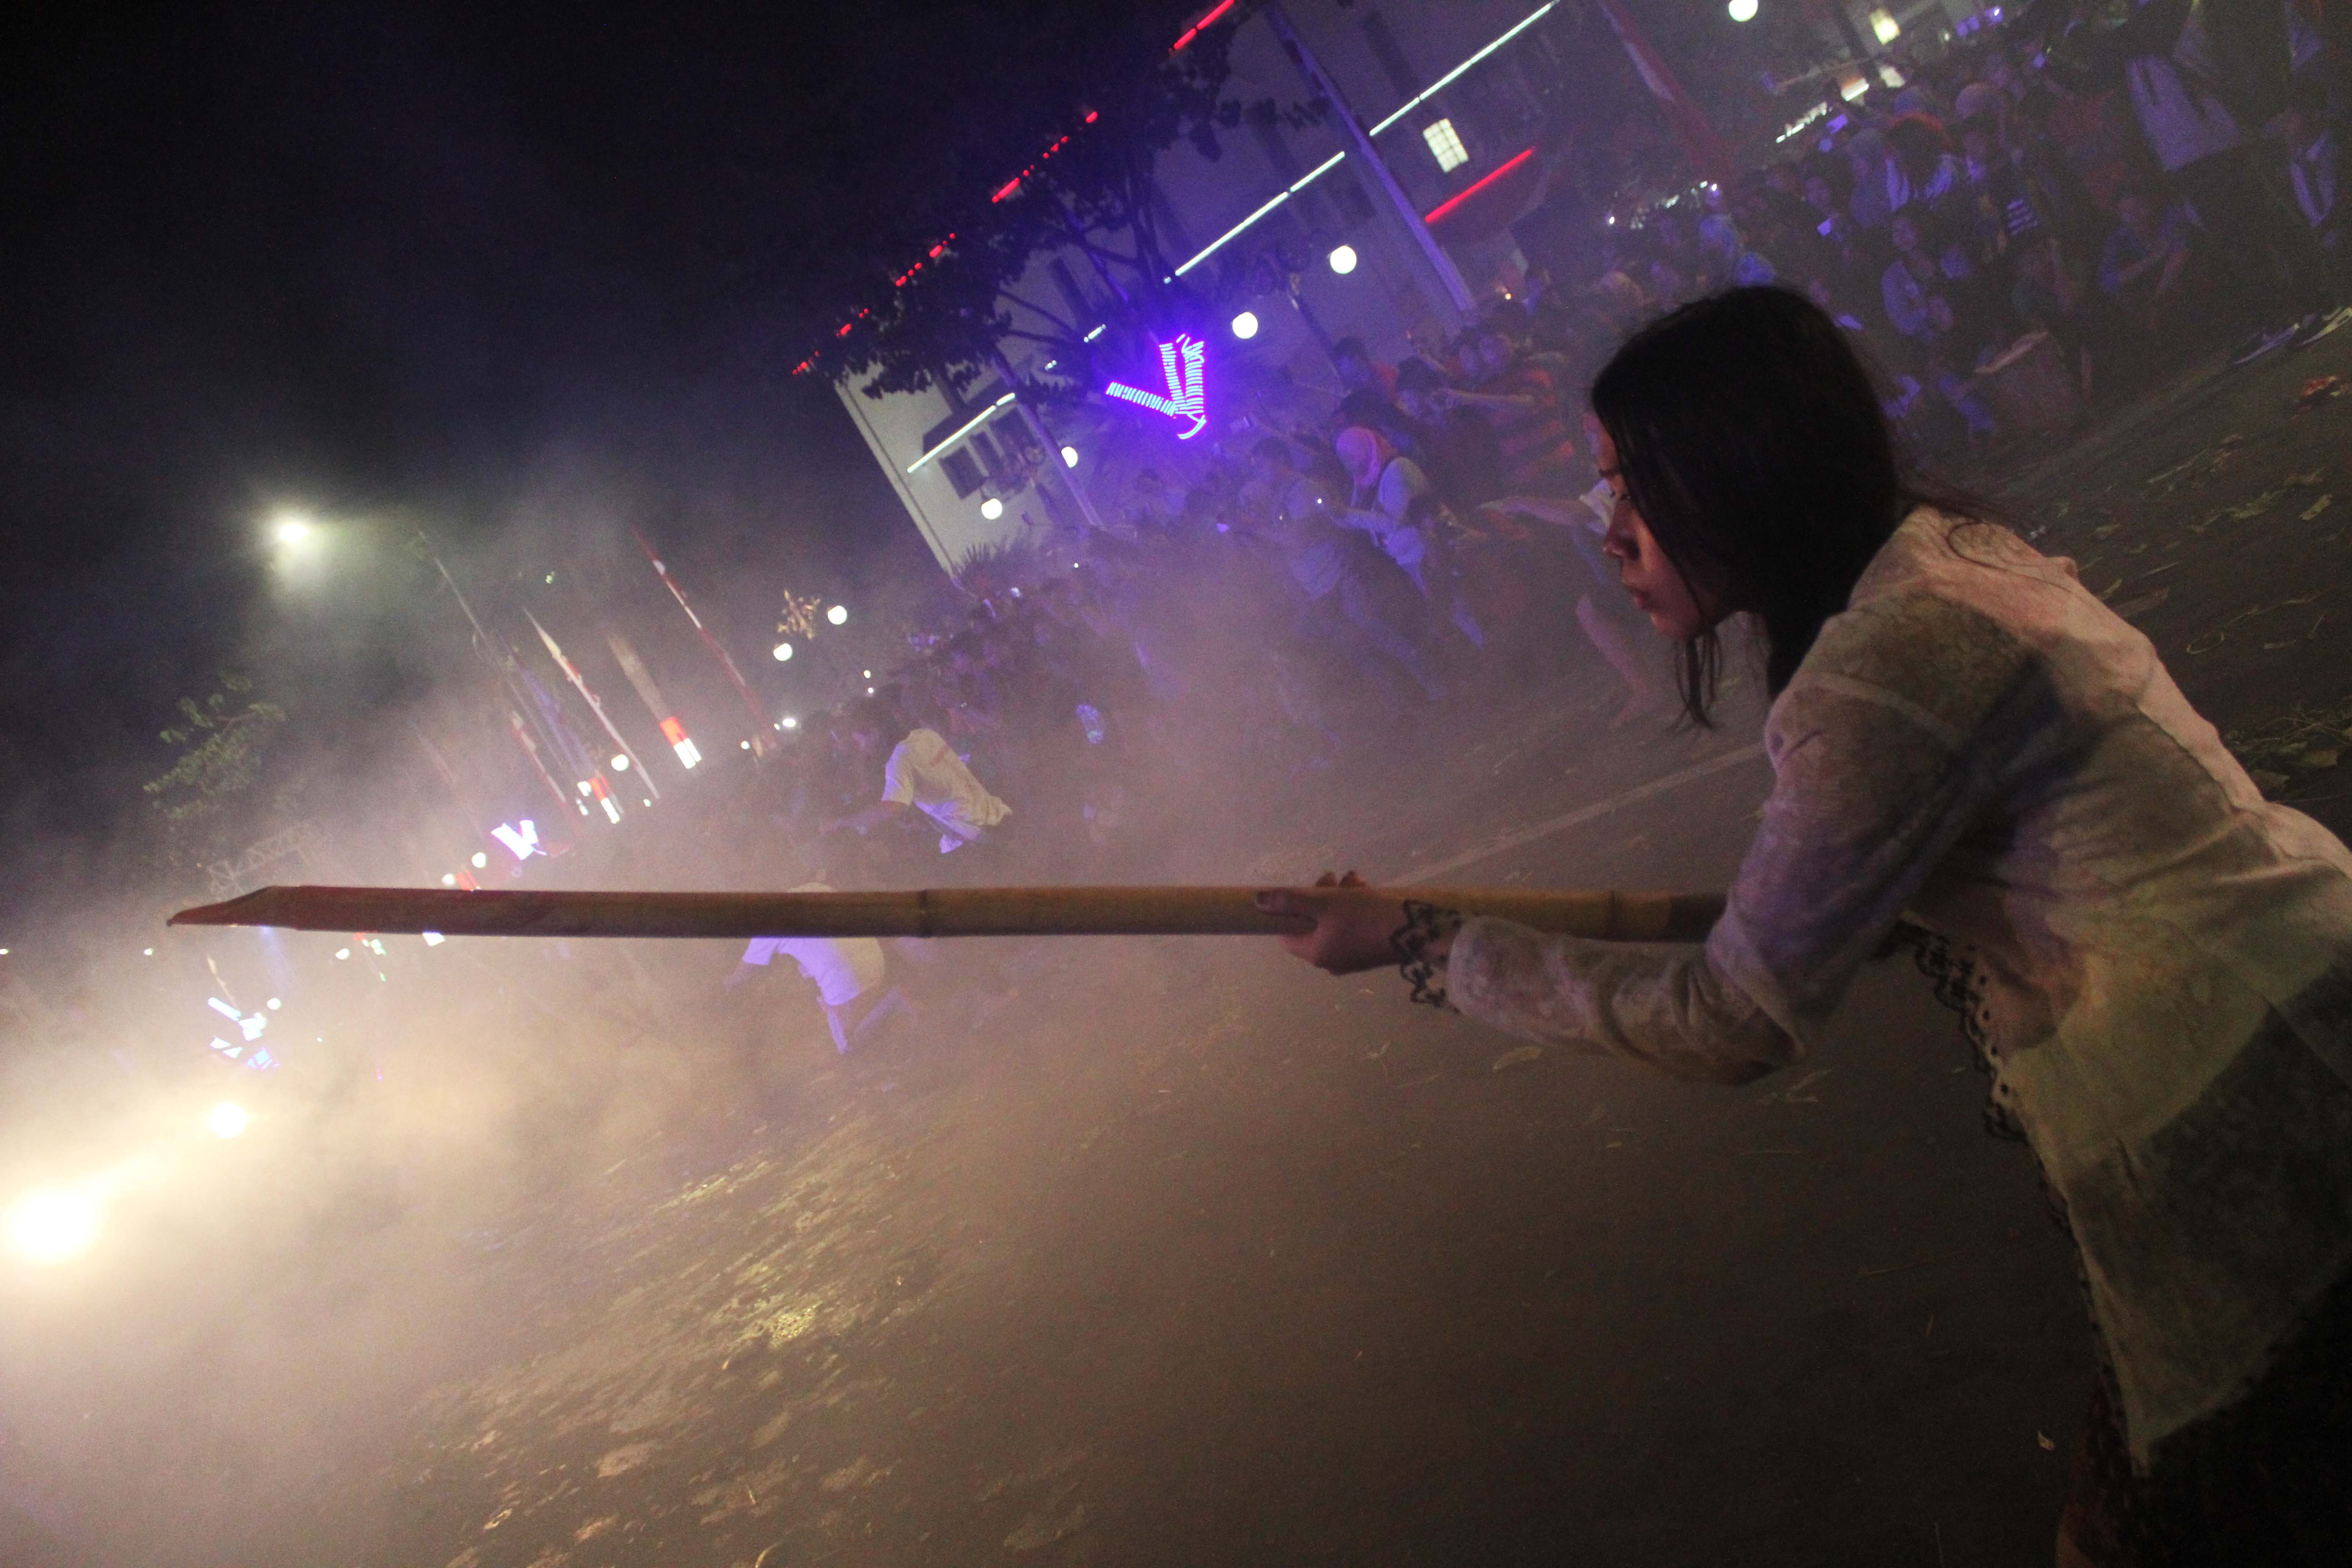 Pejuang mengacungkan senjata khas perjuangan yaitu bambu runcing